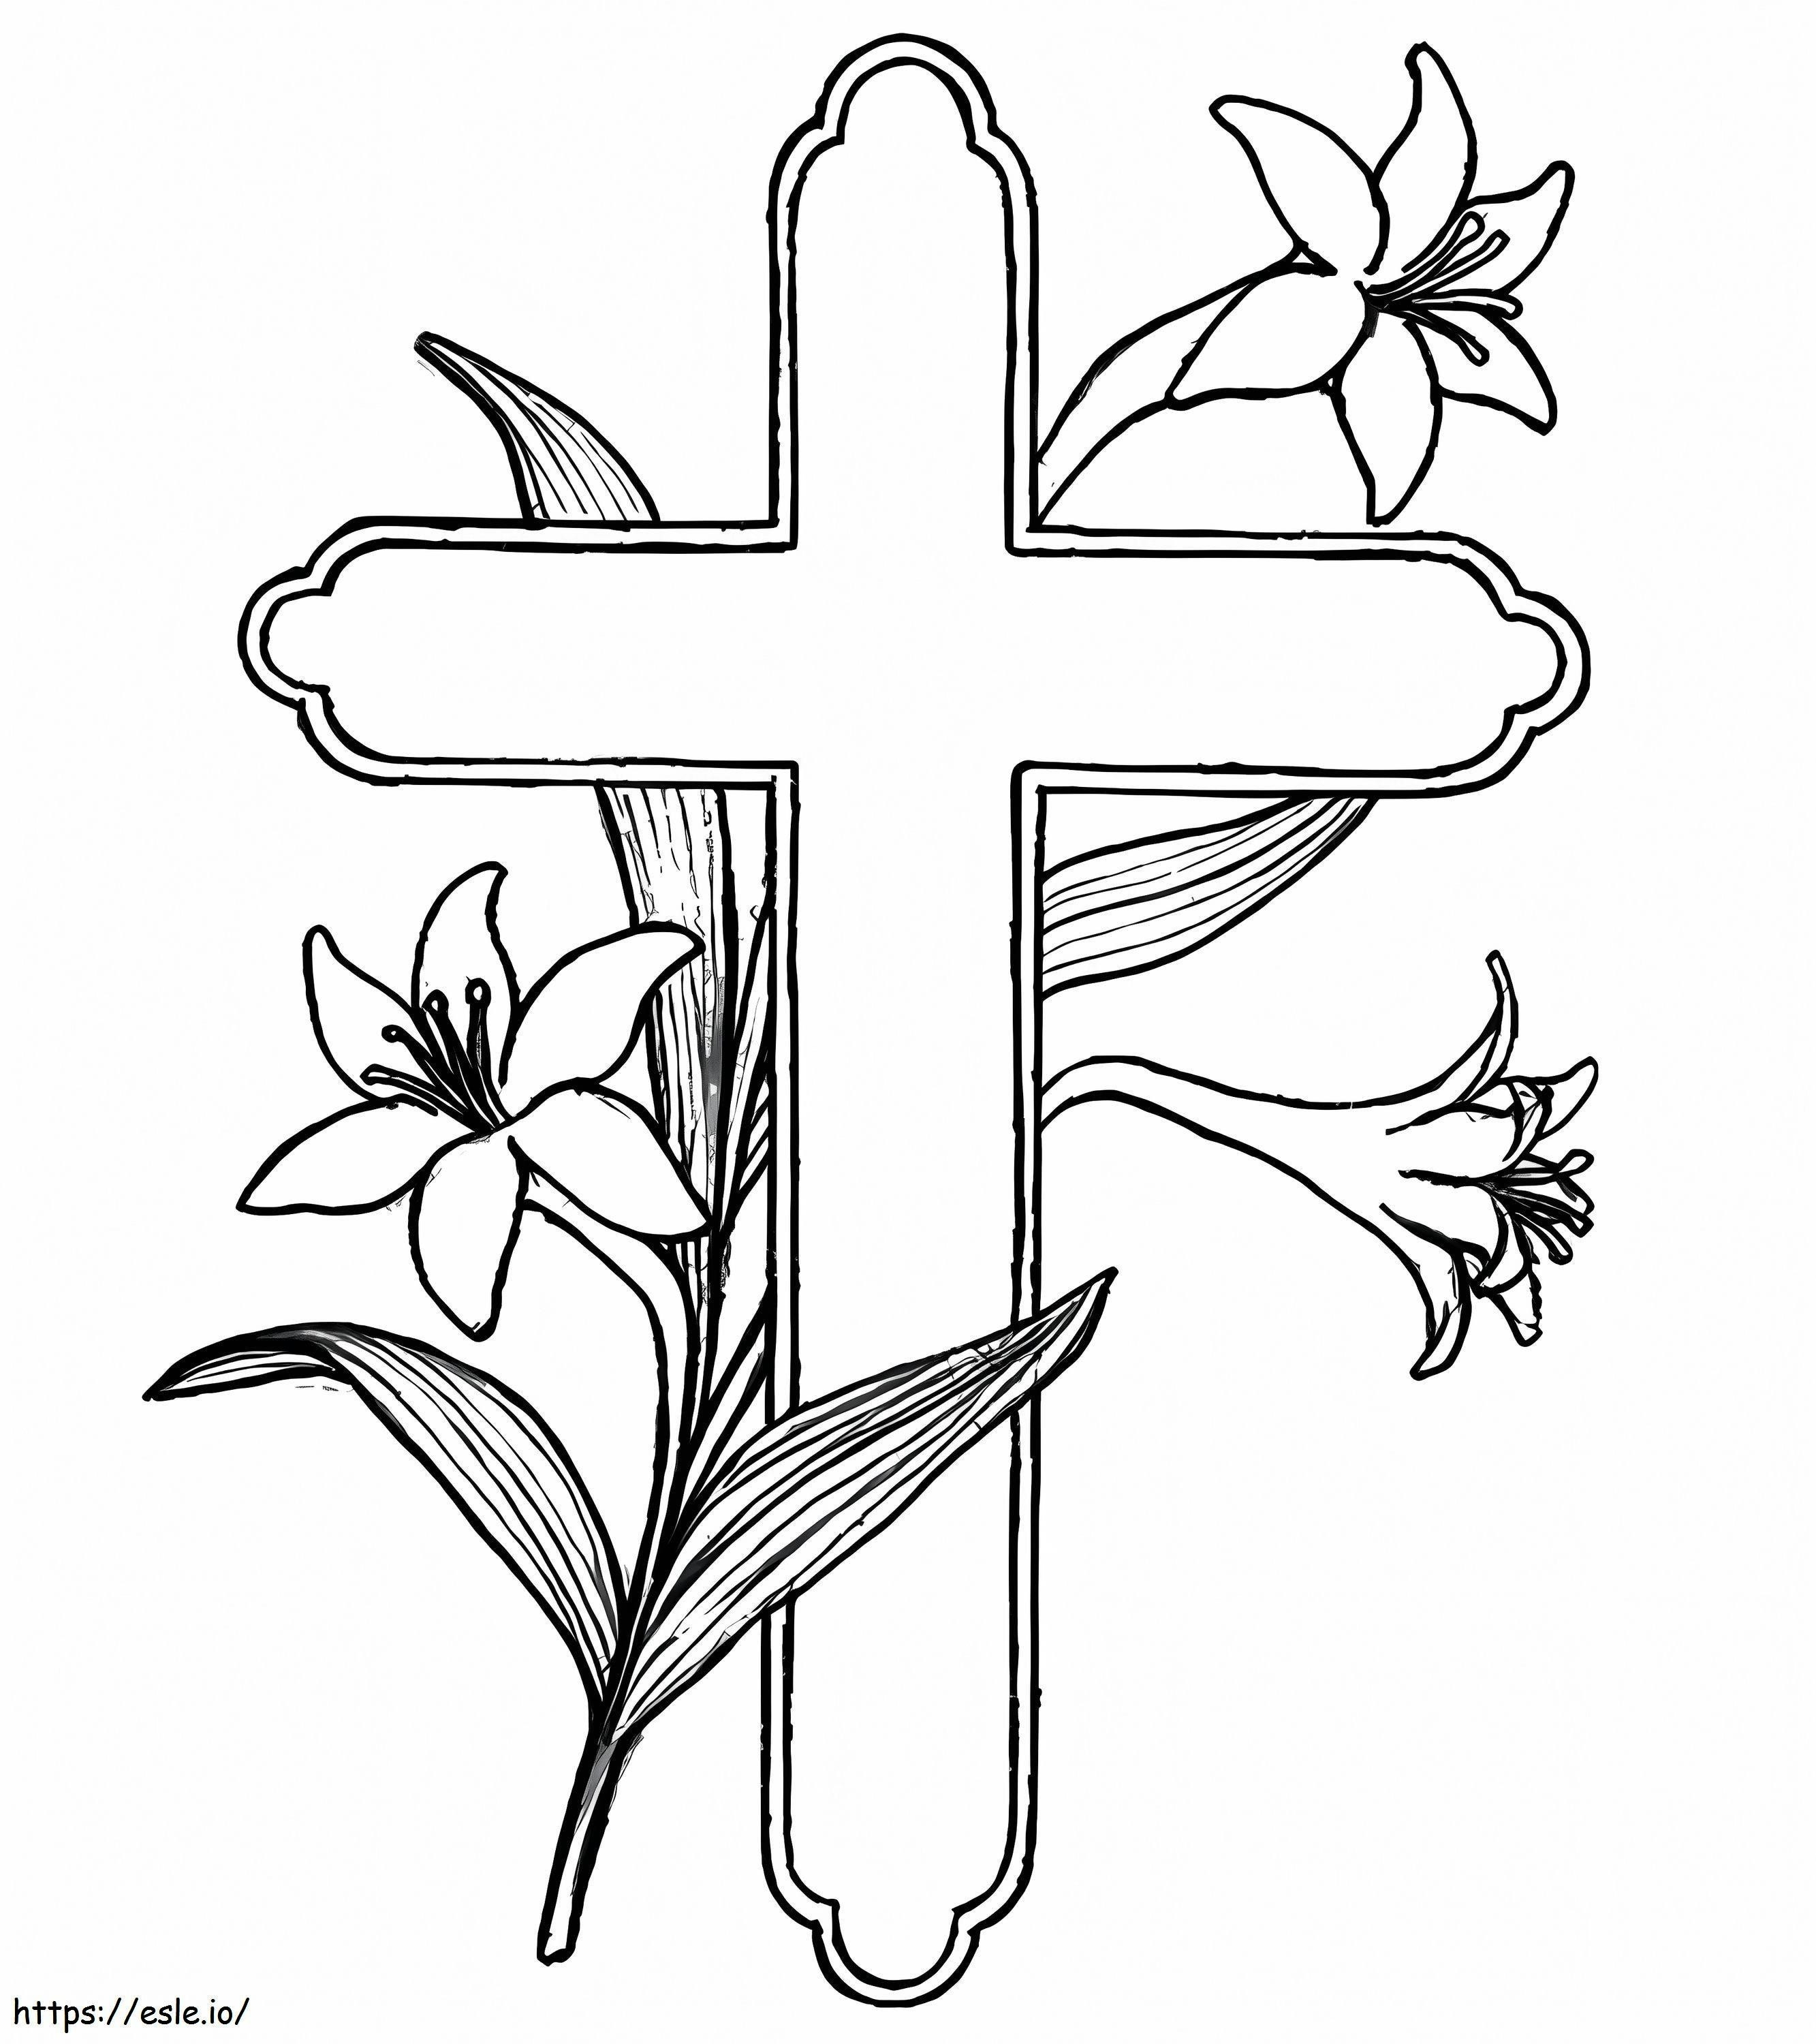 Cruz e flor para colorir